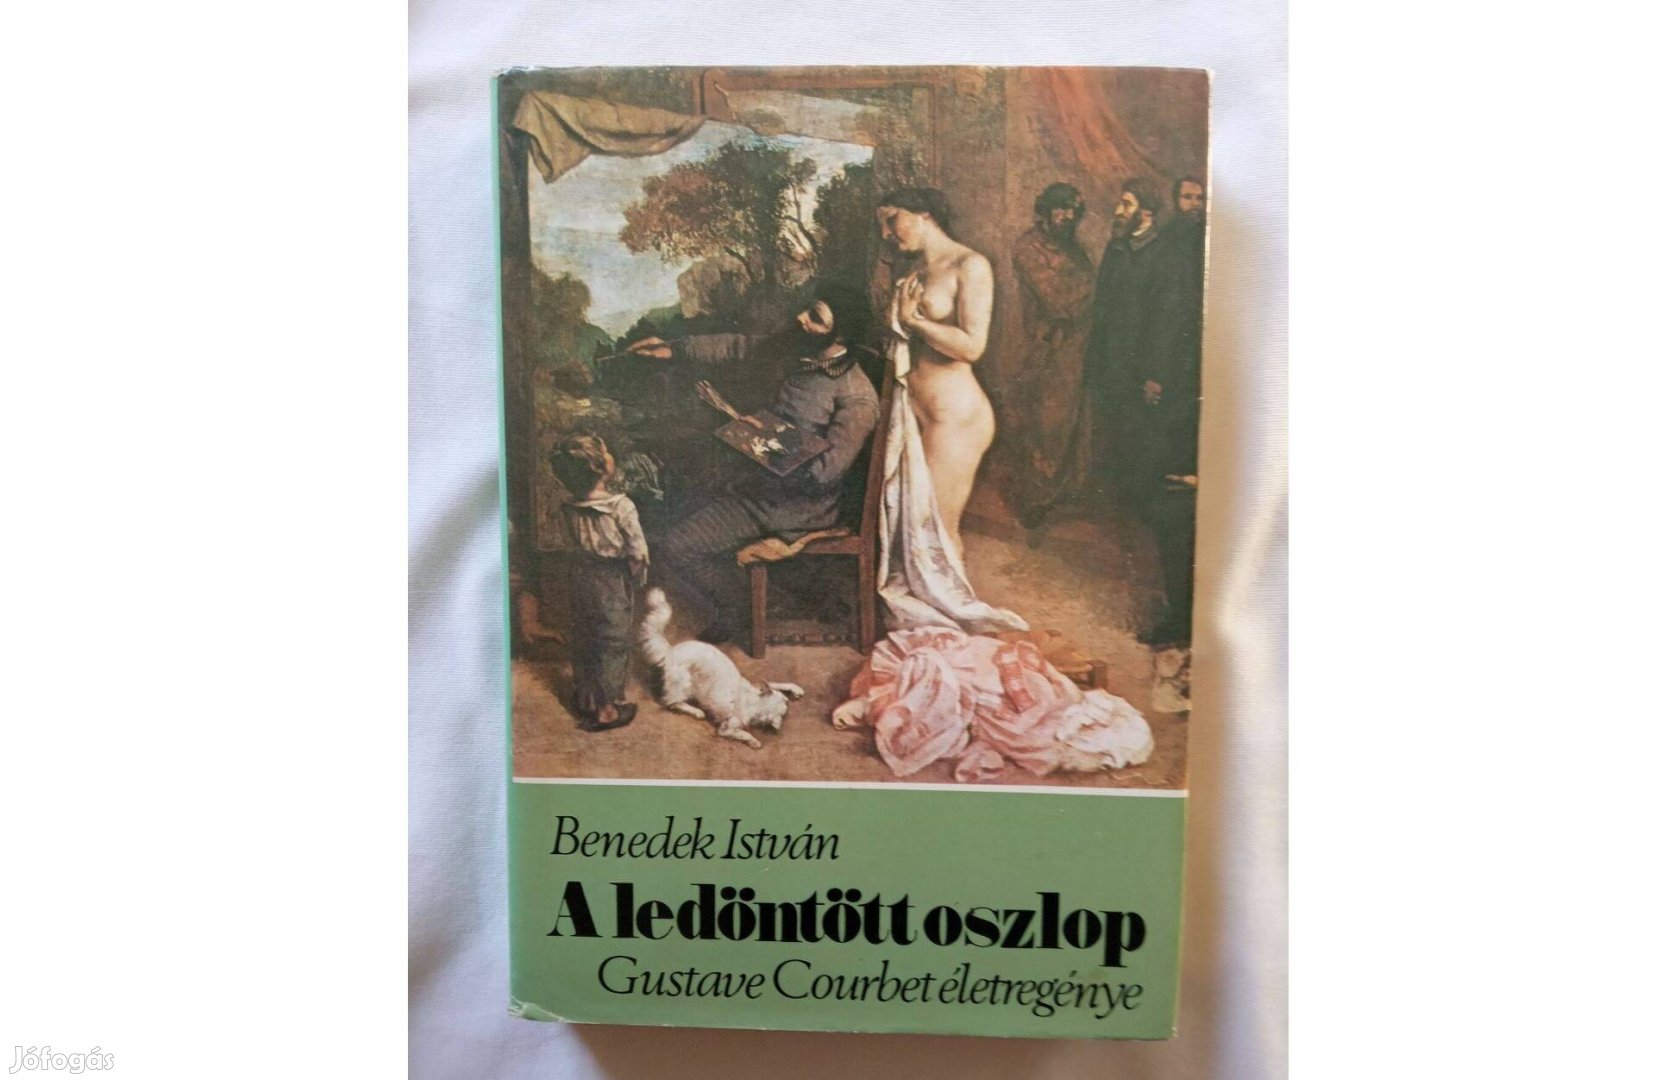 Benedek István - A ledöntött oszlop - Gustave Courbet életregénye